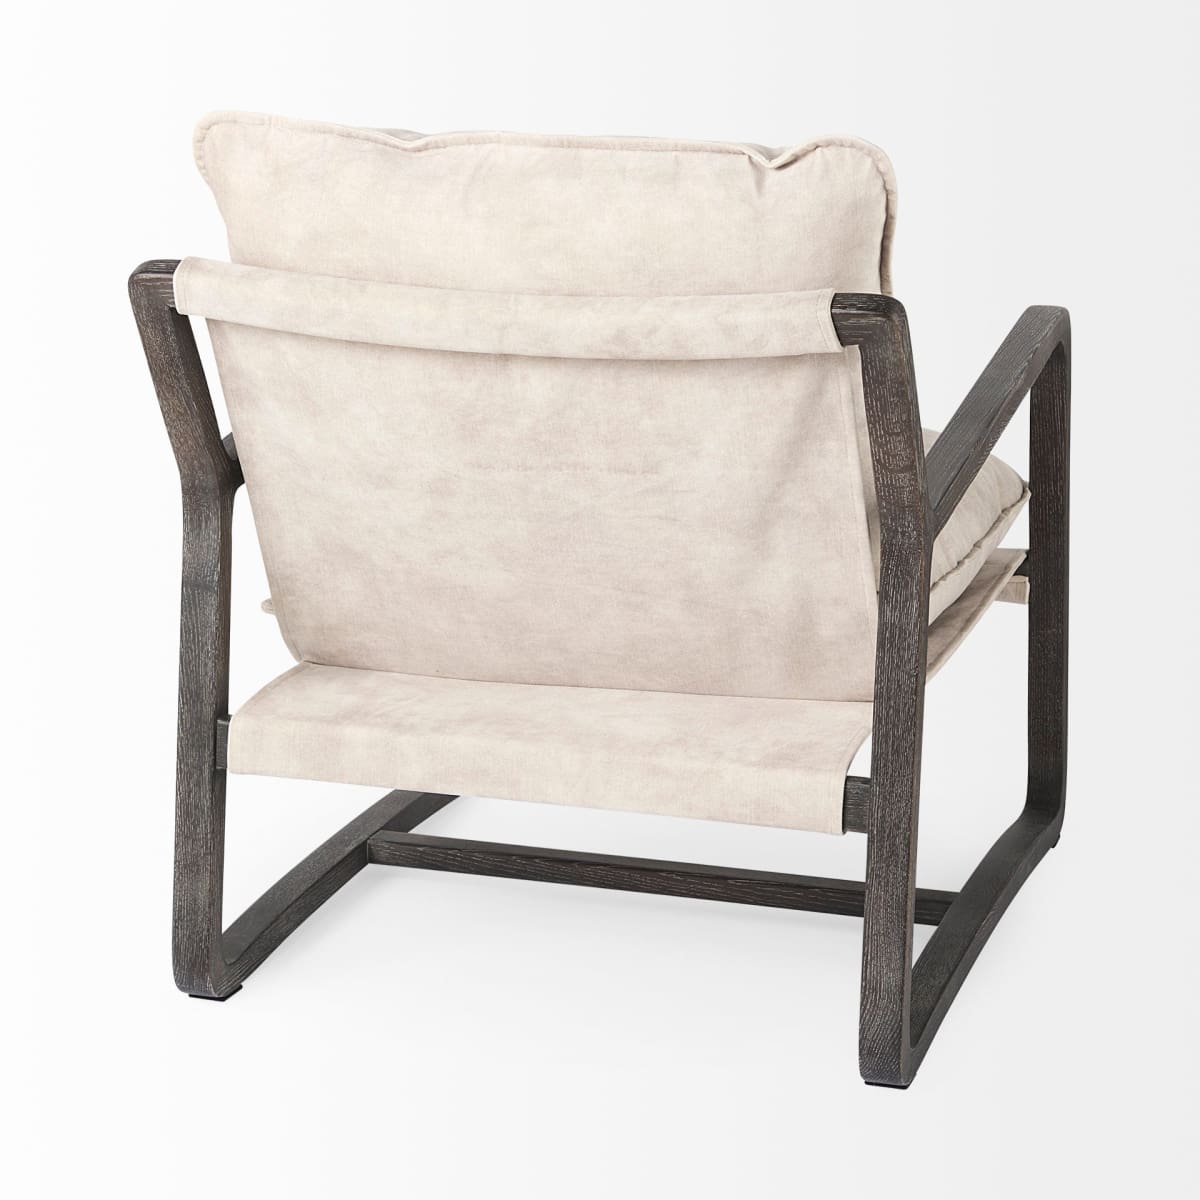 Furniture Barn - Brayden Accent Chair Cream Fabric